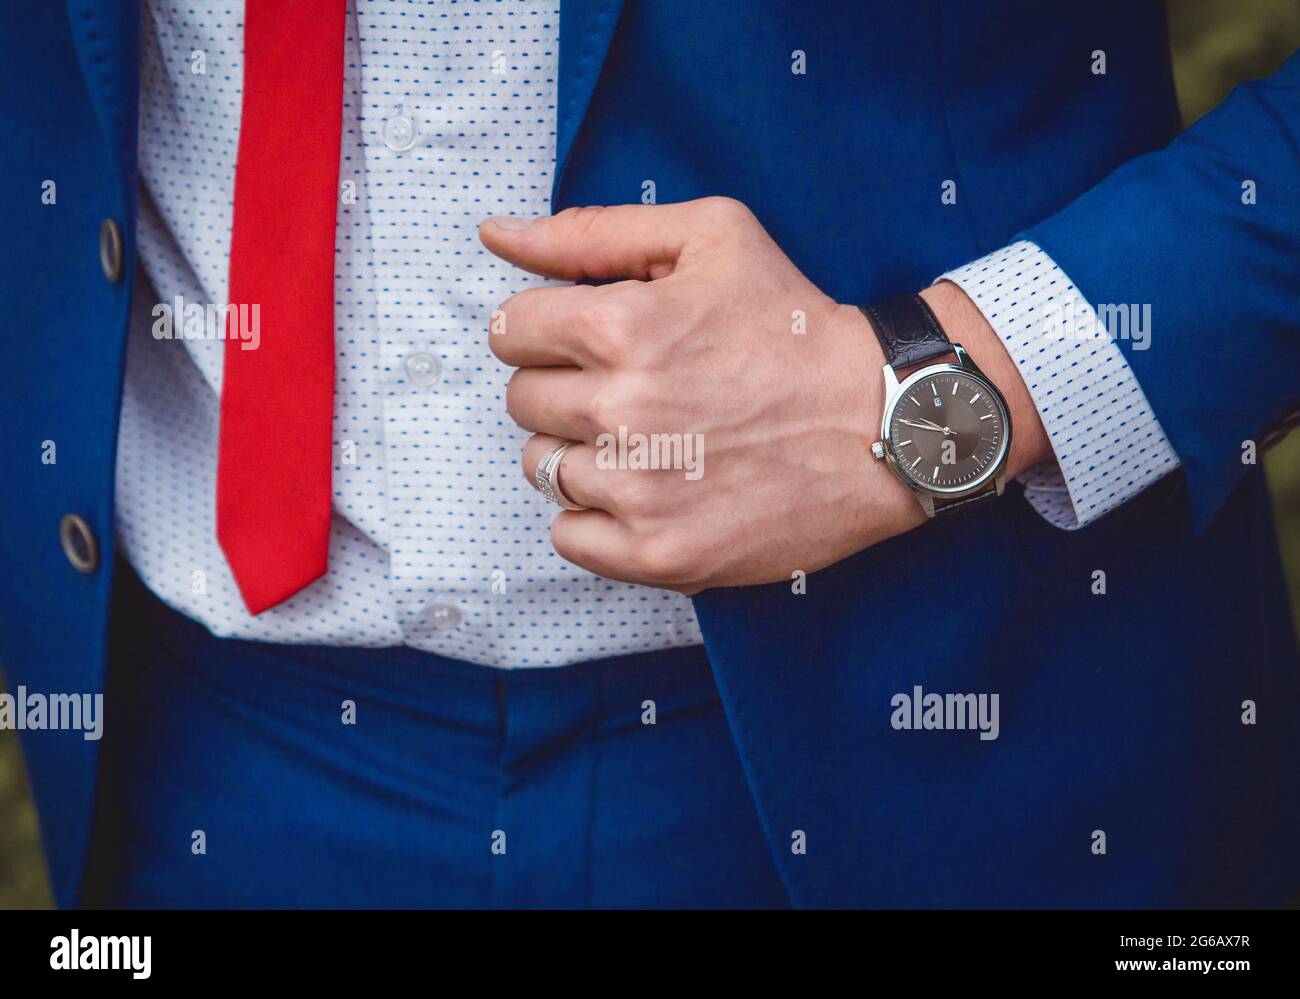 Die Hand eines Mannes mit einer Handuhr hält sich an einem blauen Anzug vor dem Hintergrund eines weißen Hemdes und einer roten Krawatte, einem Kleidungsstil für Geschäftsleute Stockfoto